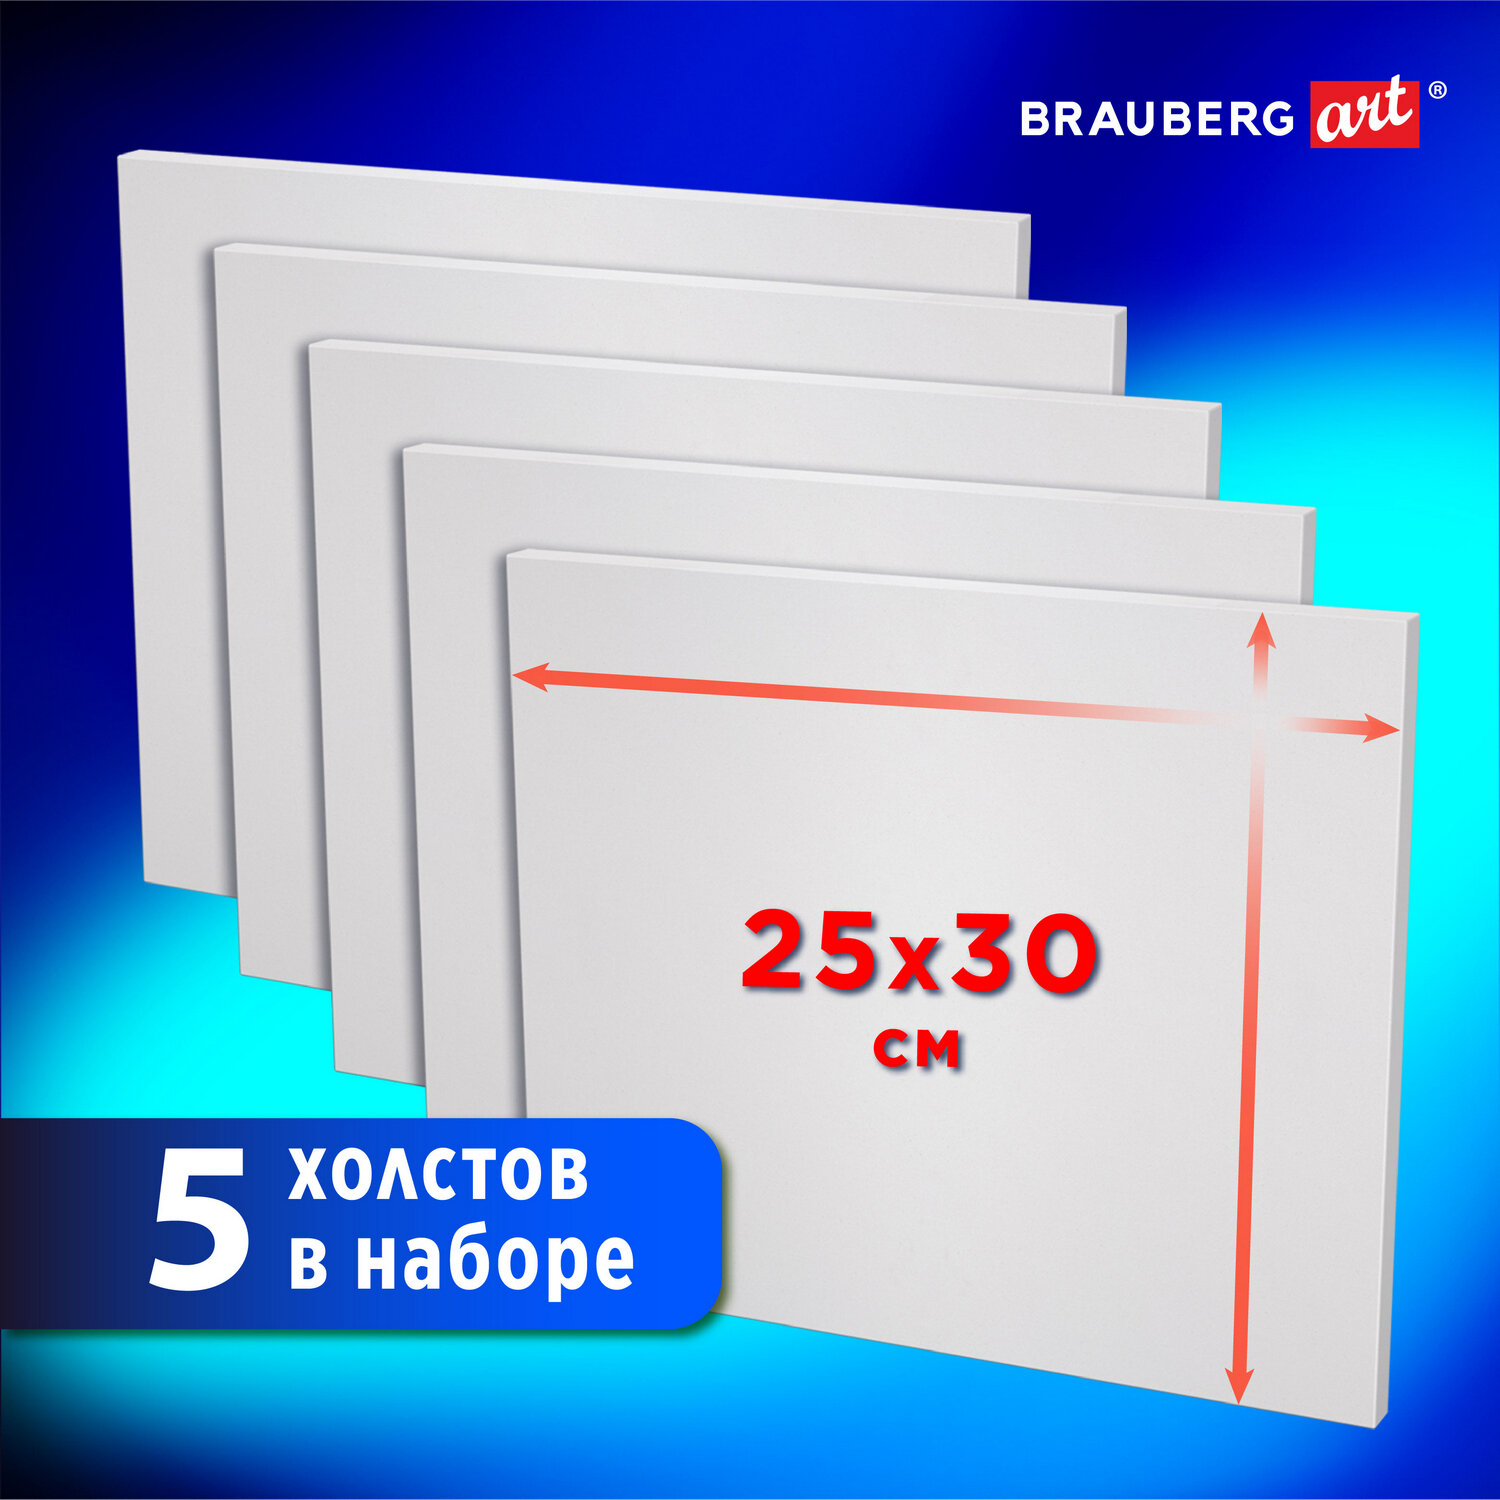 Холст на картоне Brauberg для рисования маленький 25x30 см набор 5 шт - фото 4